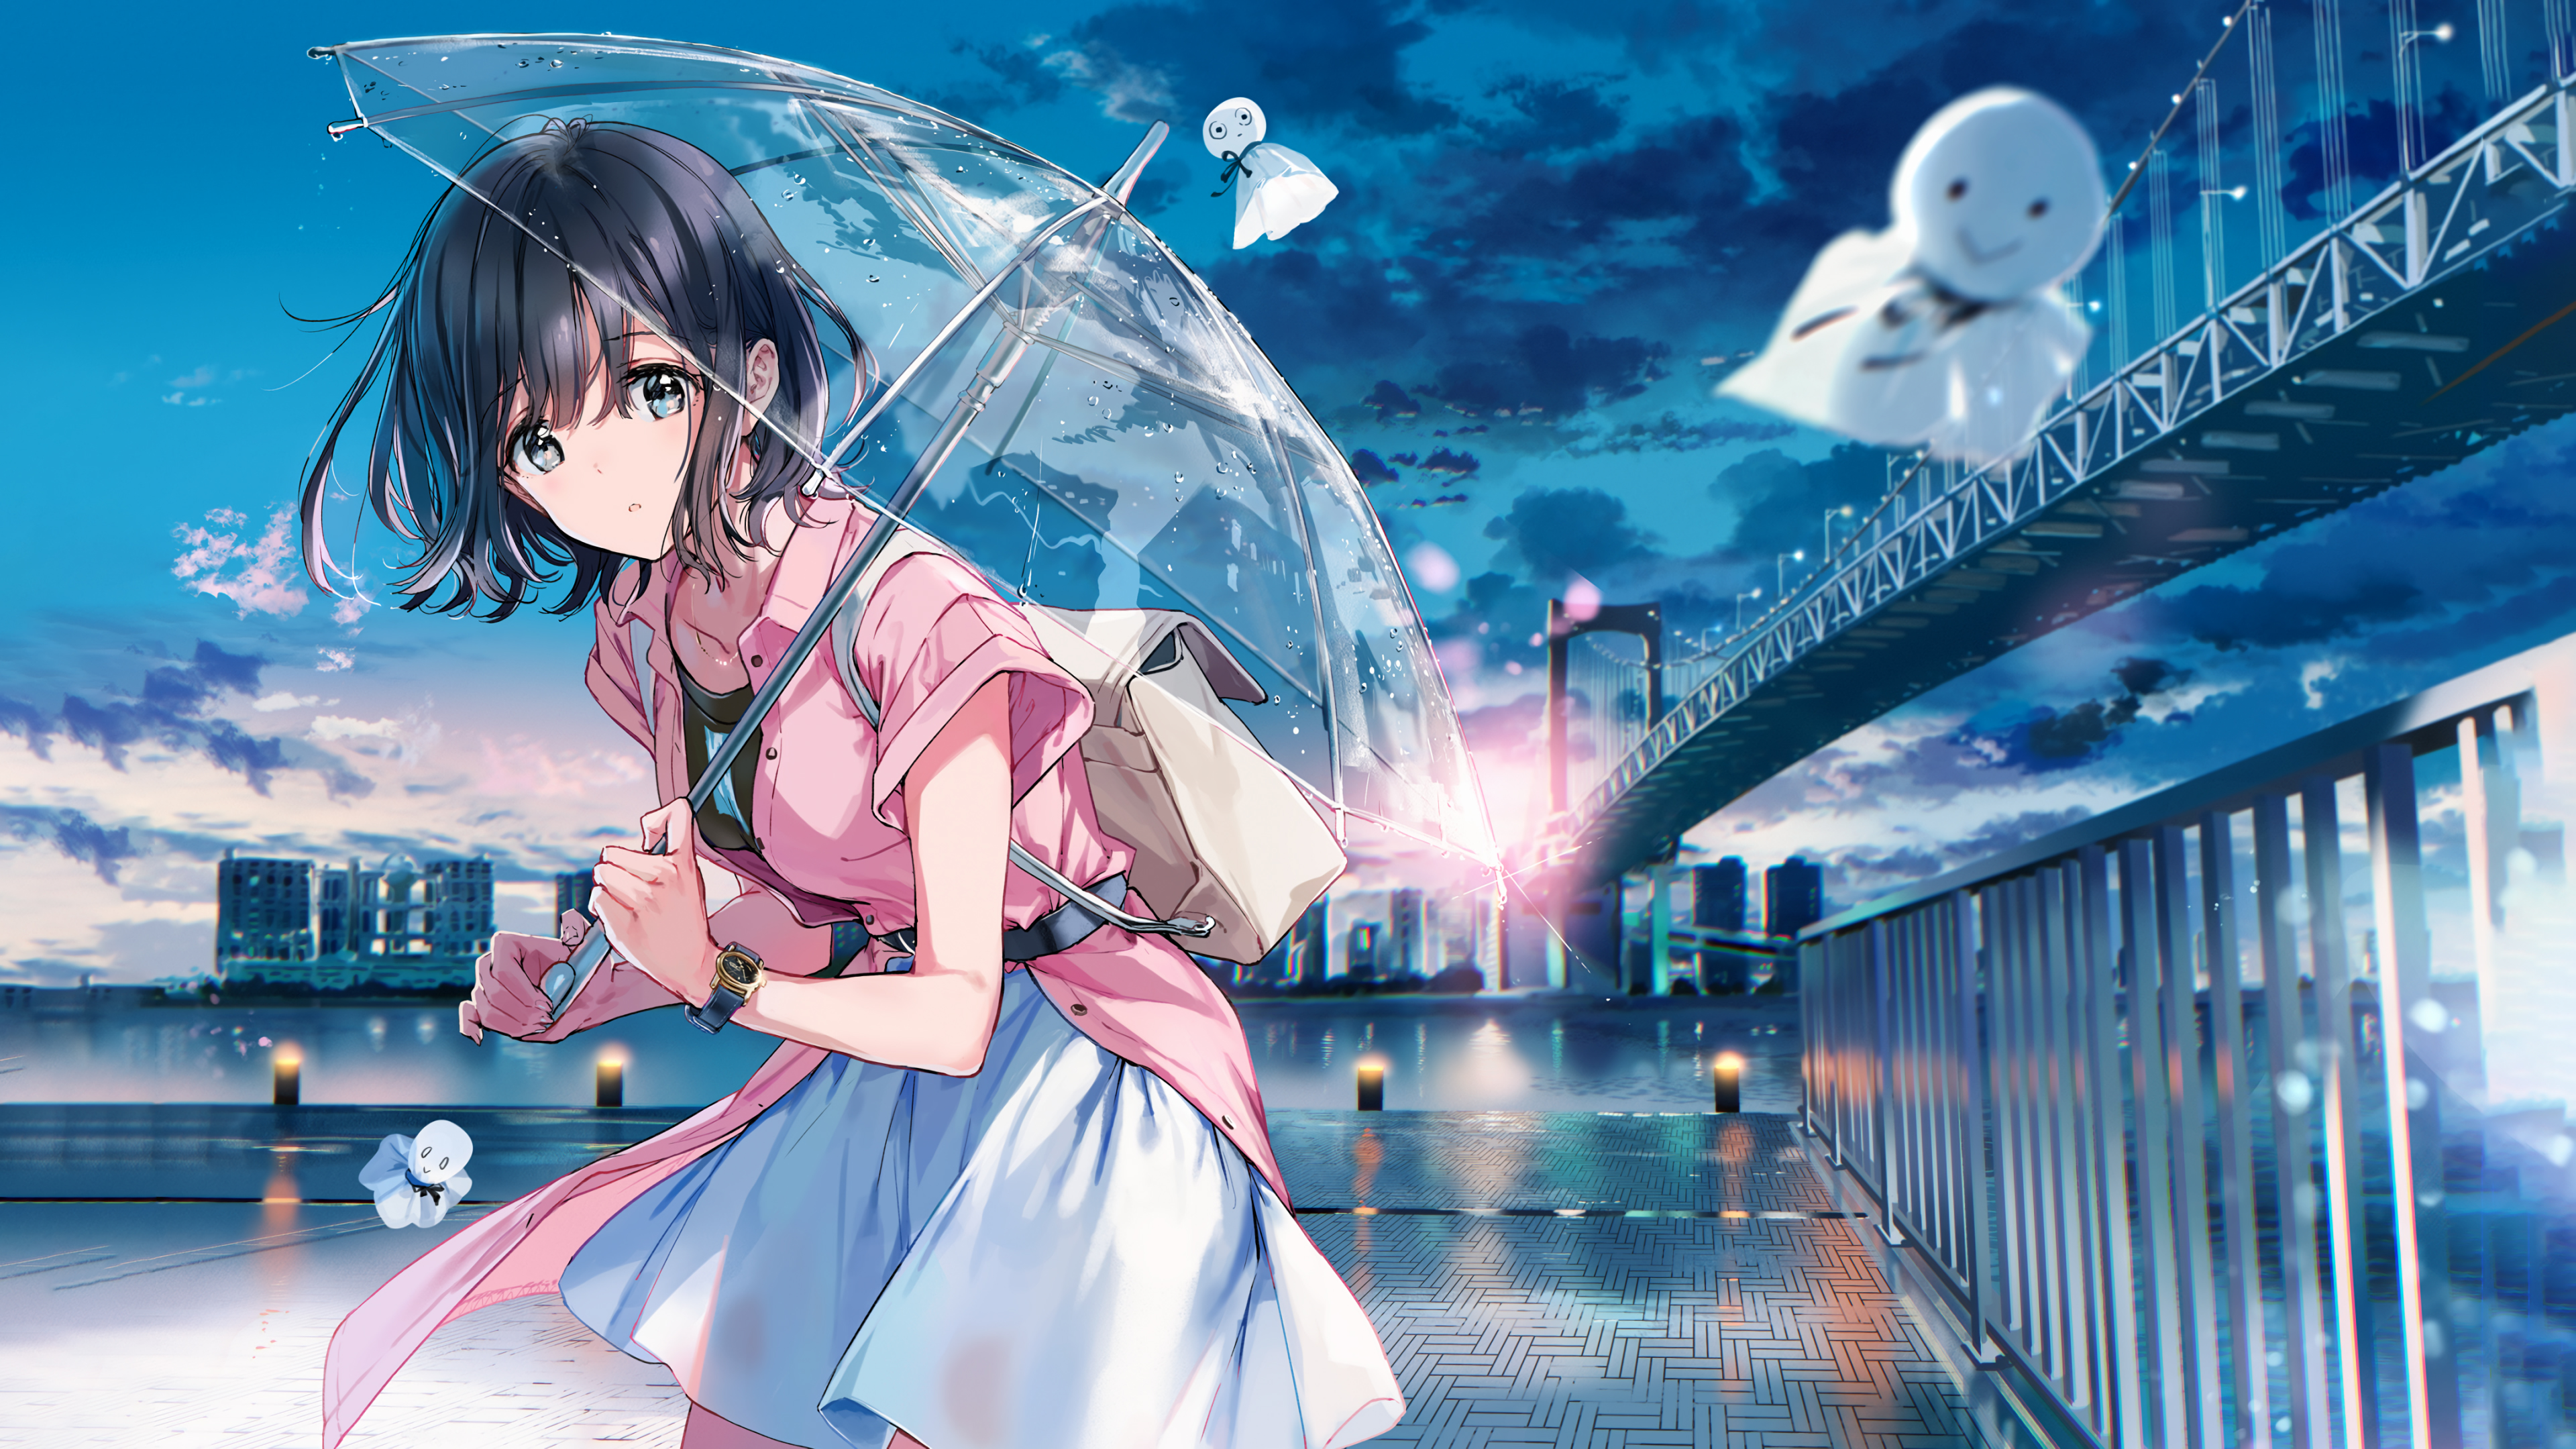 The Umbrella Girl 4K